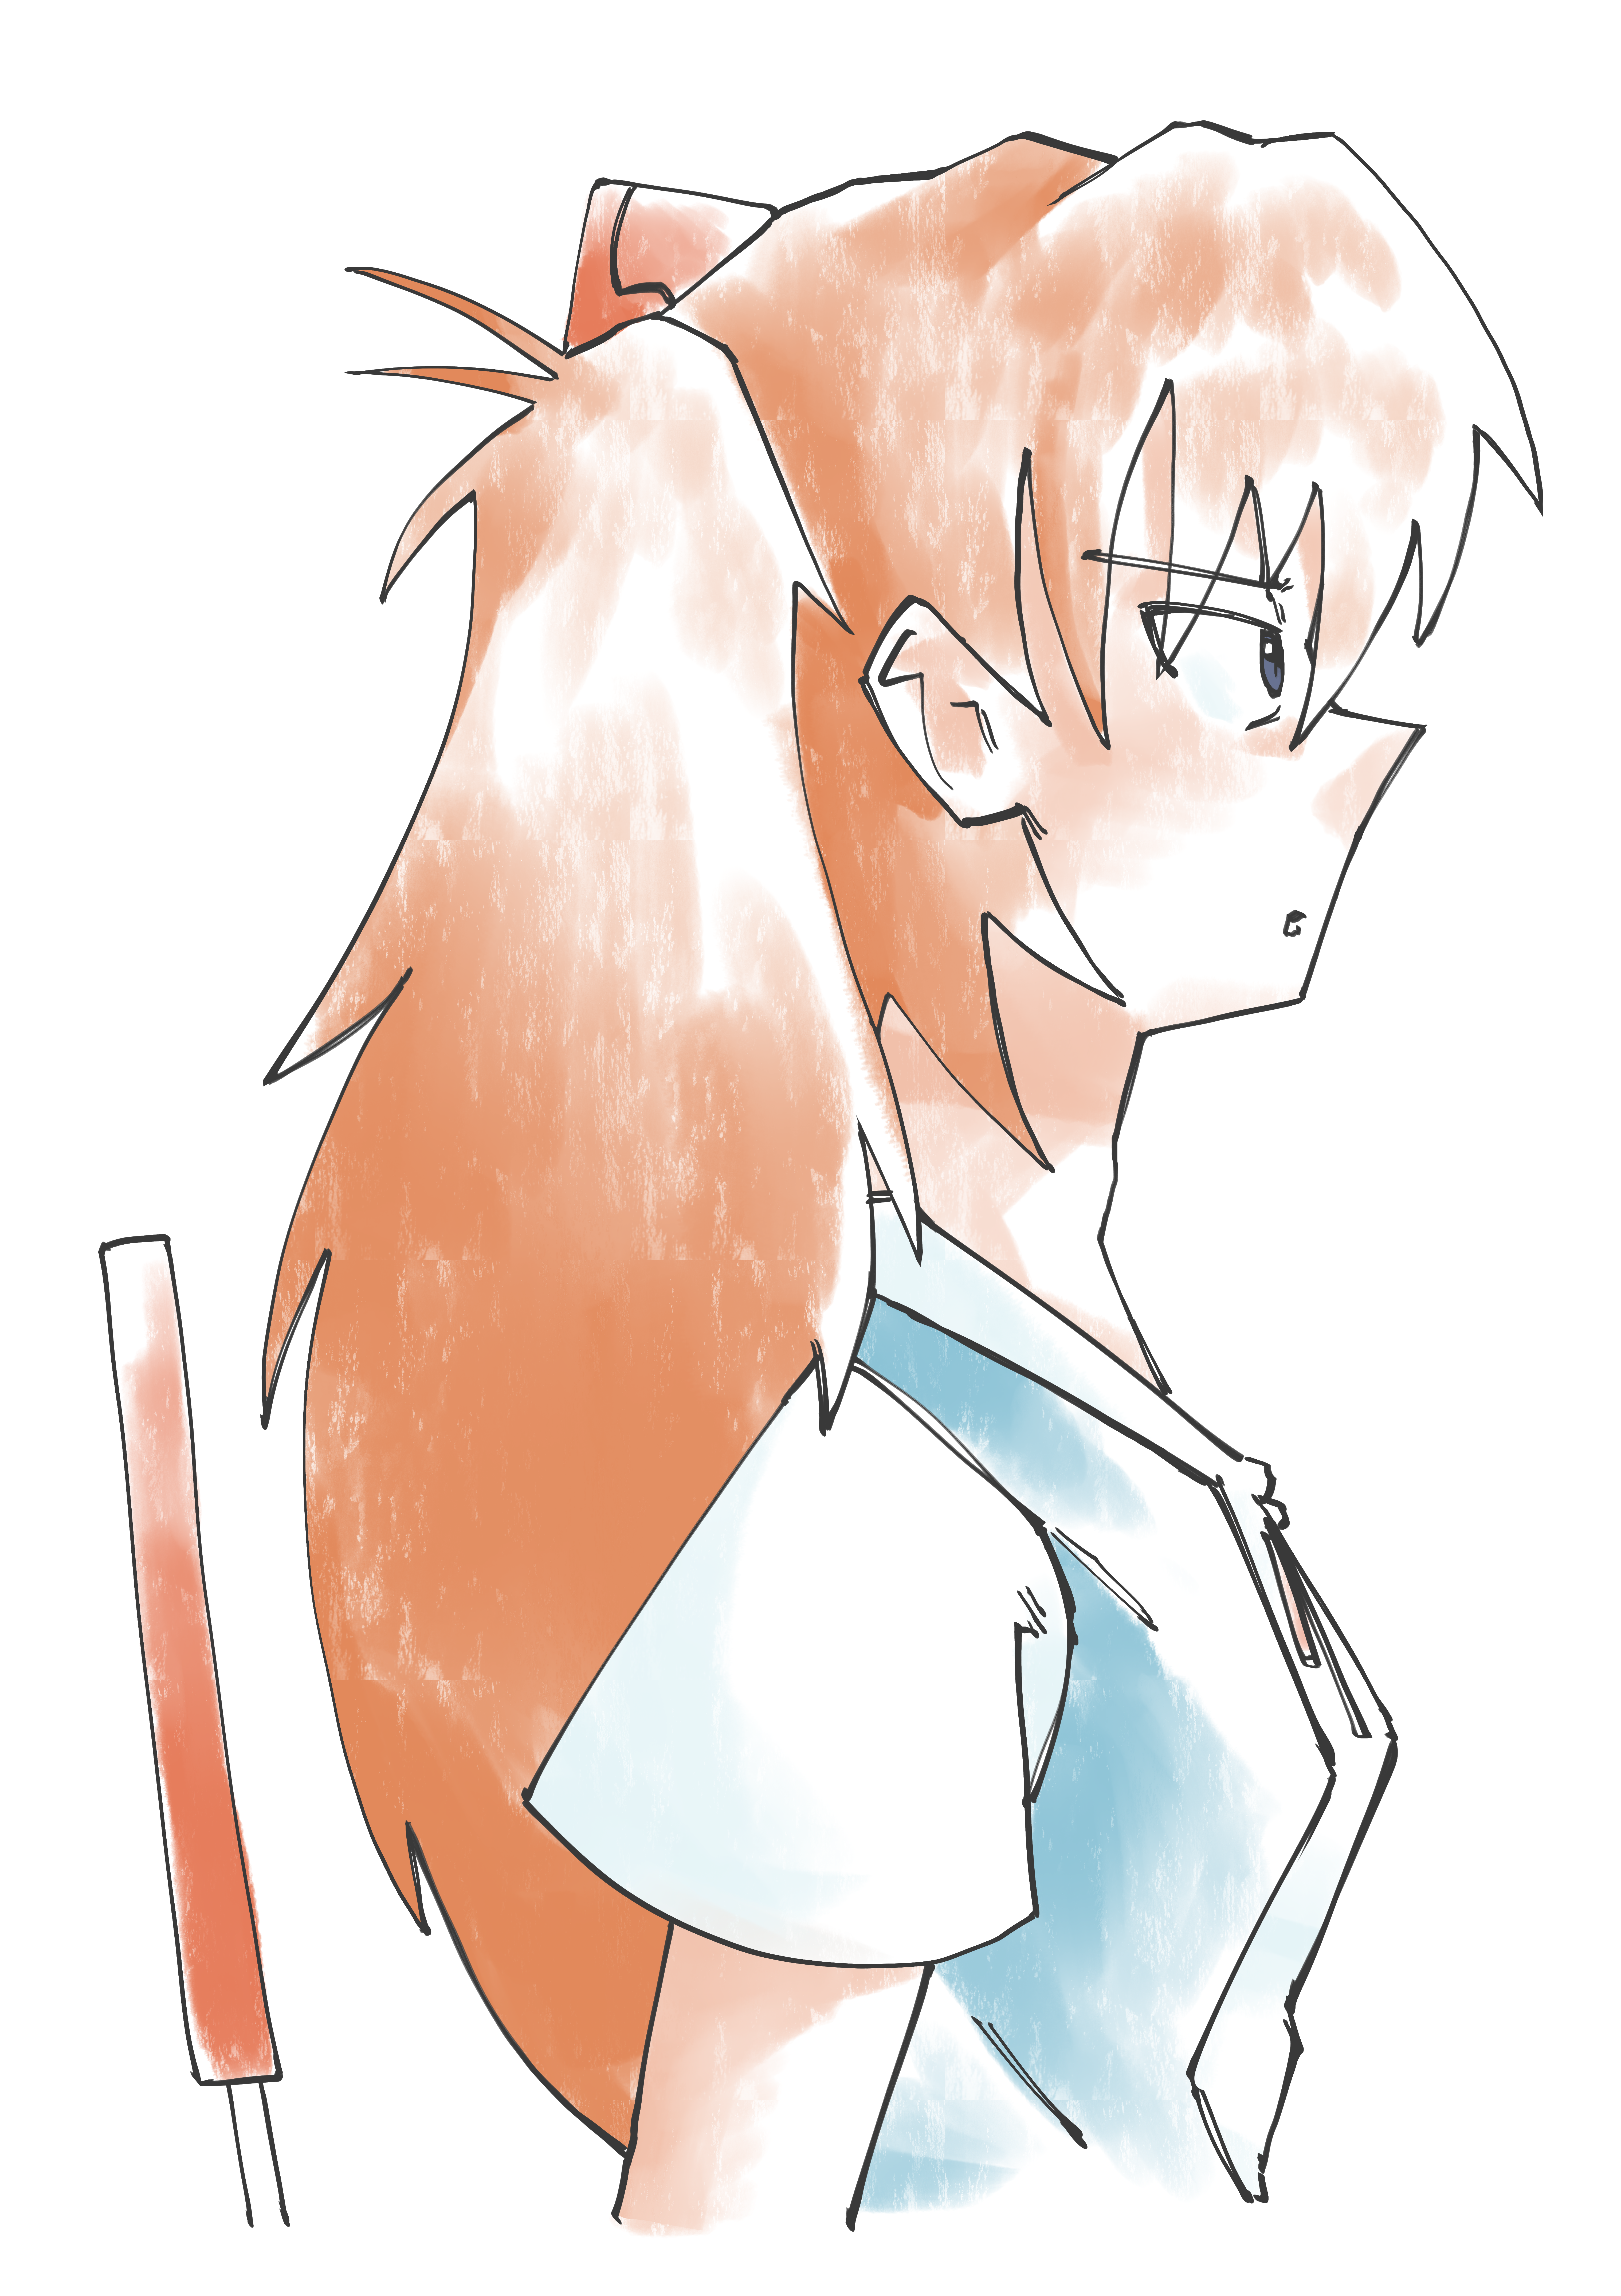 Asuka, staring forward aimlessly